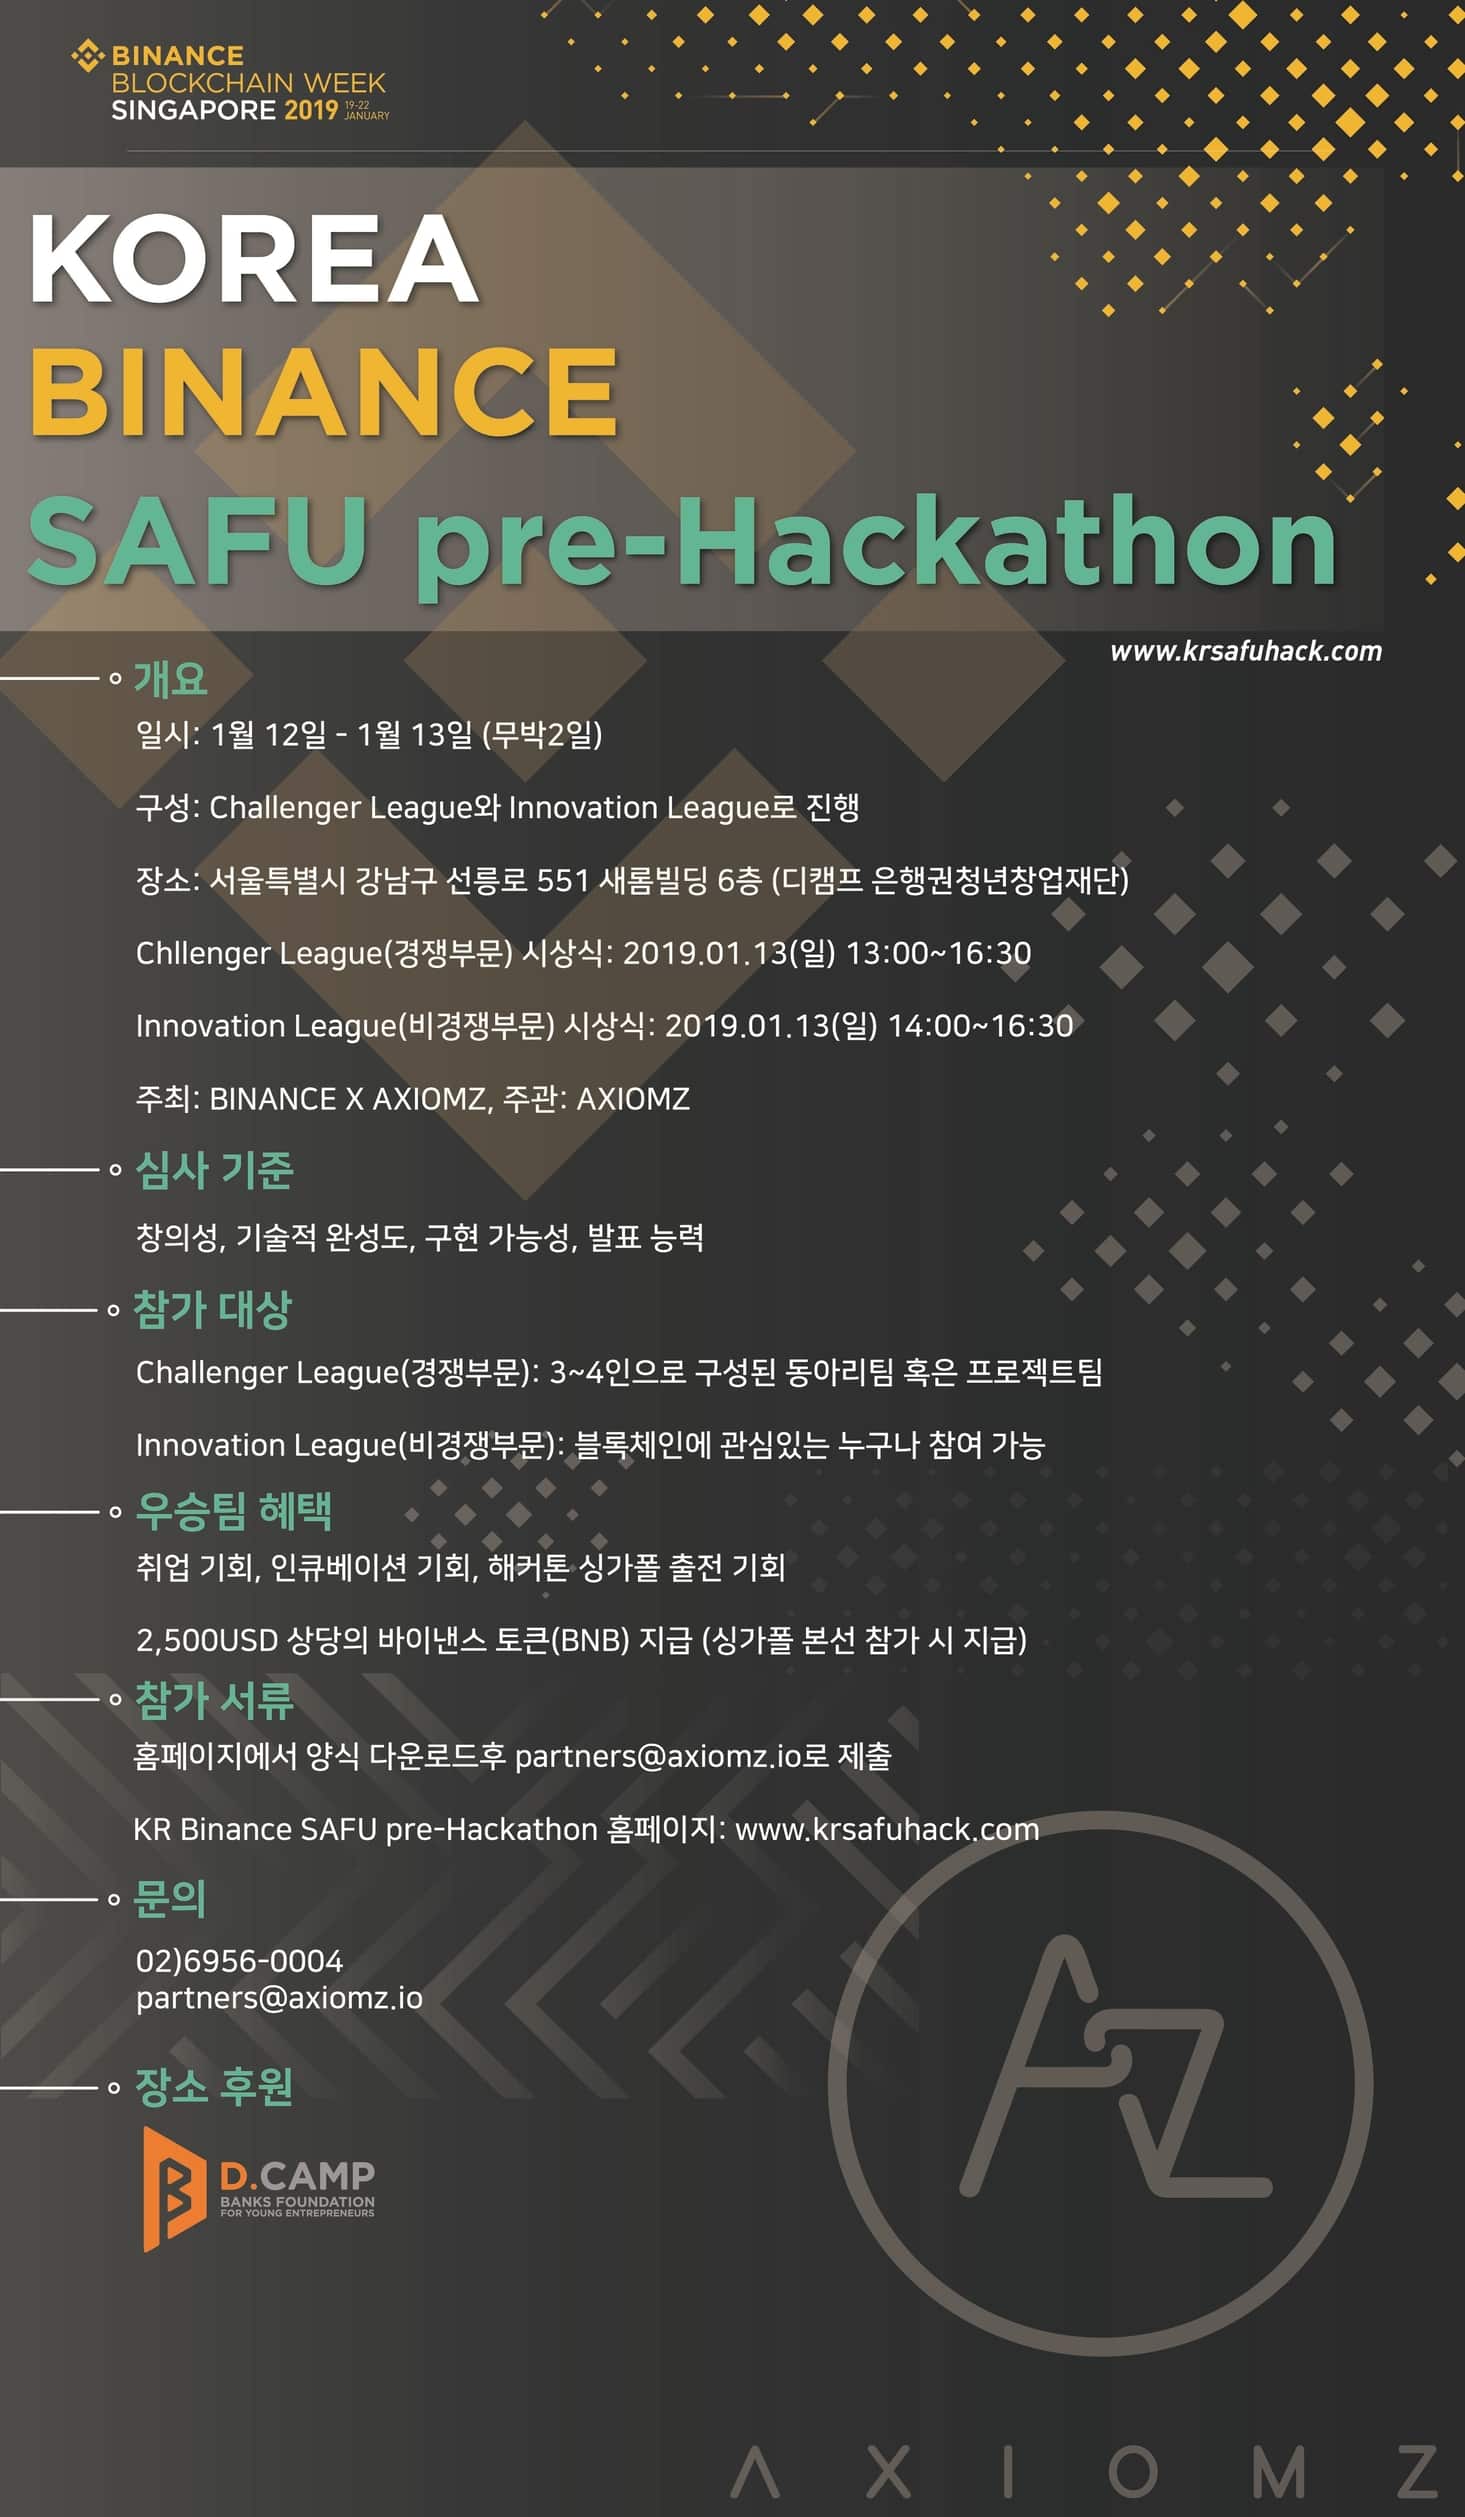 KR Binance SAFU pre-Hackathon Poster